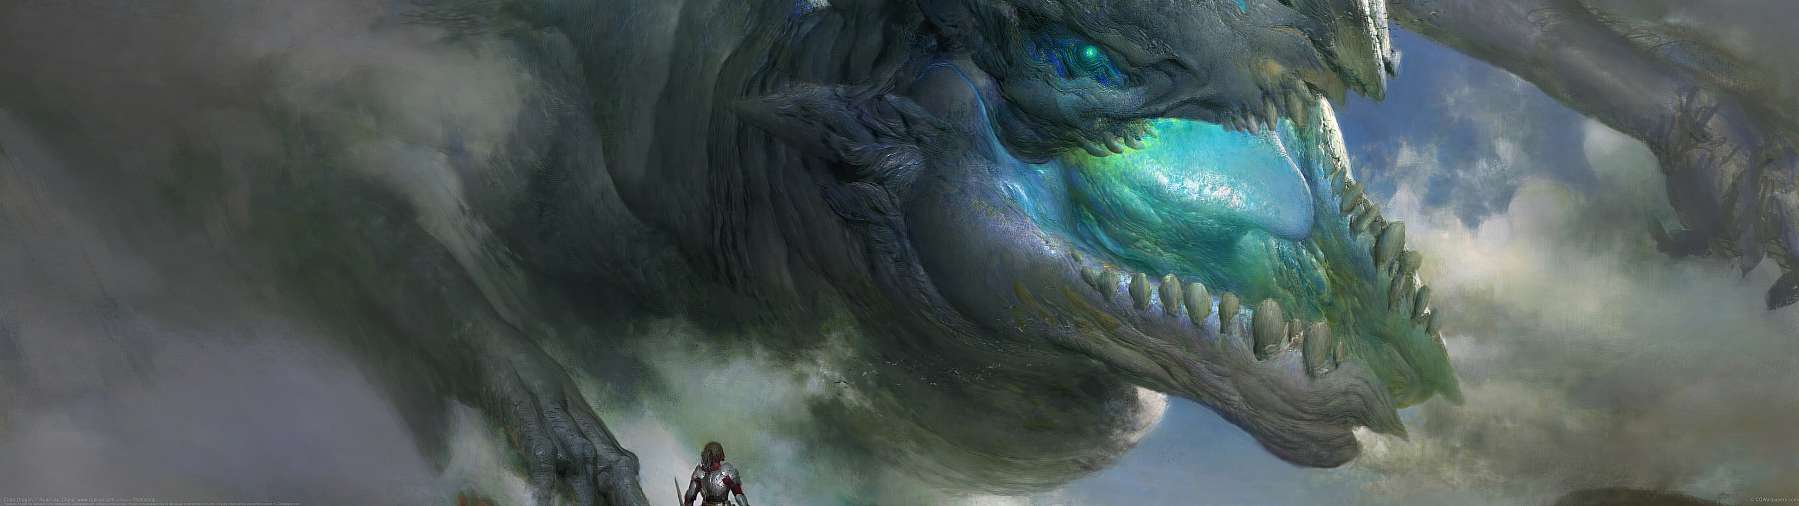 Elder Dragon ultrawide wallpaper